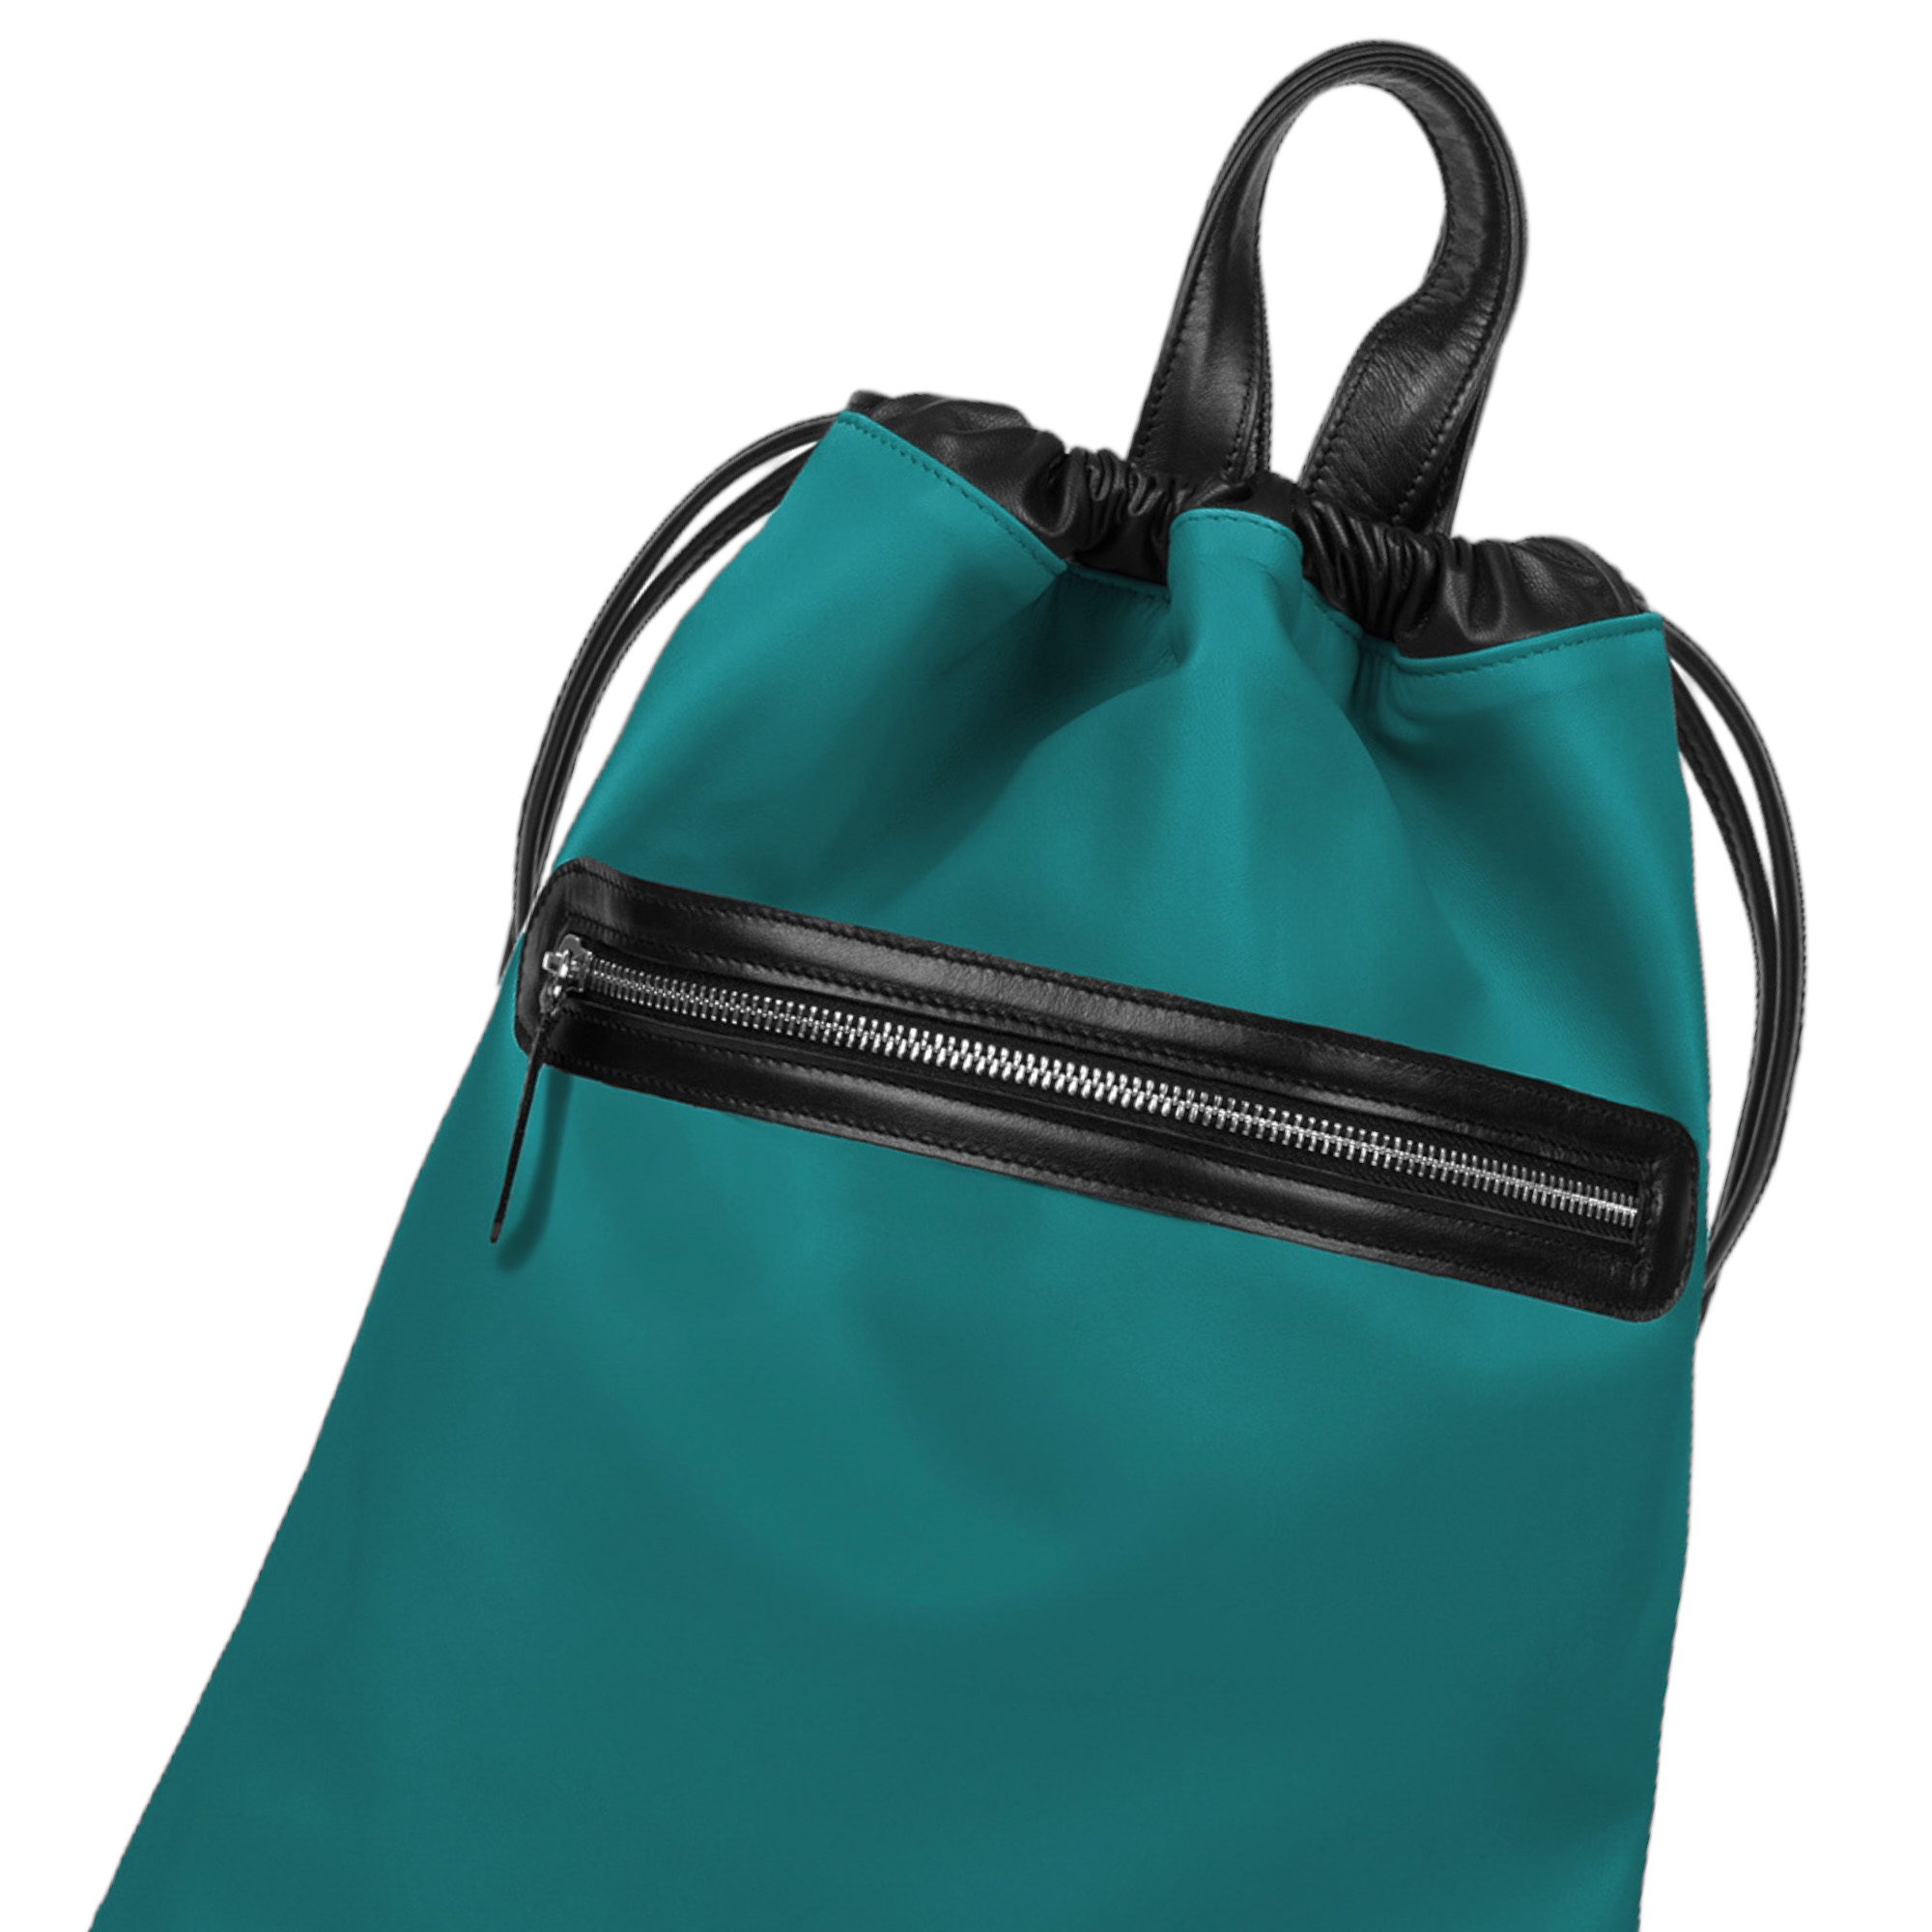 πράσινη δερμάτινη τσάντα πλάτης